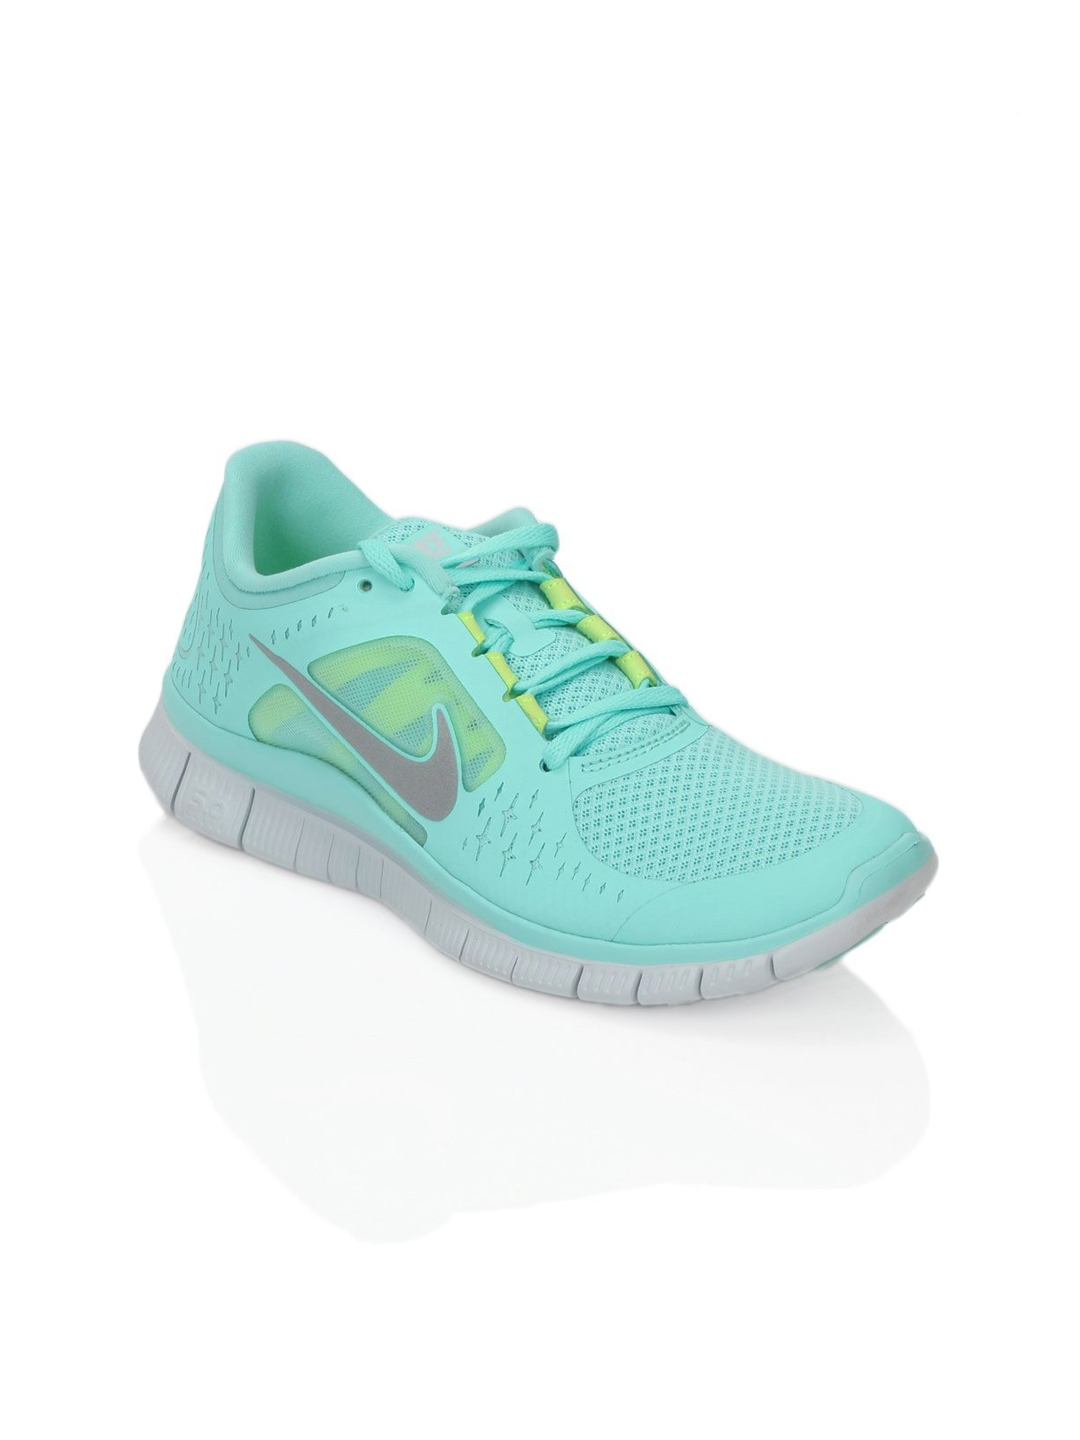 Buy Nike Women Free Run+ 3 Green Sports Shoes - Sports Shoes for Women ...